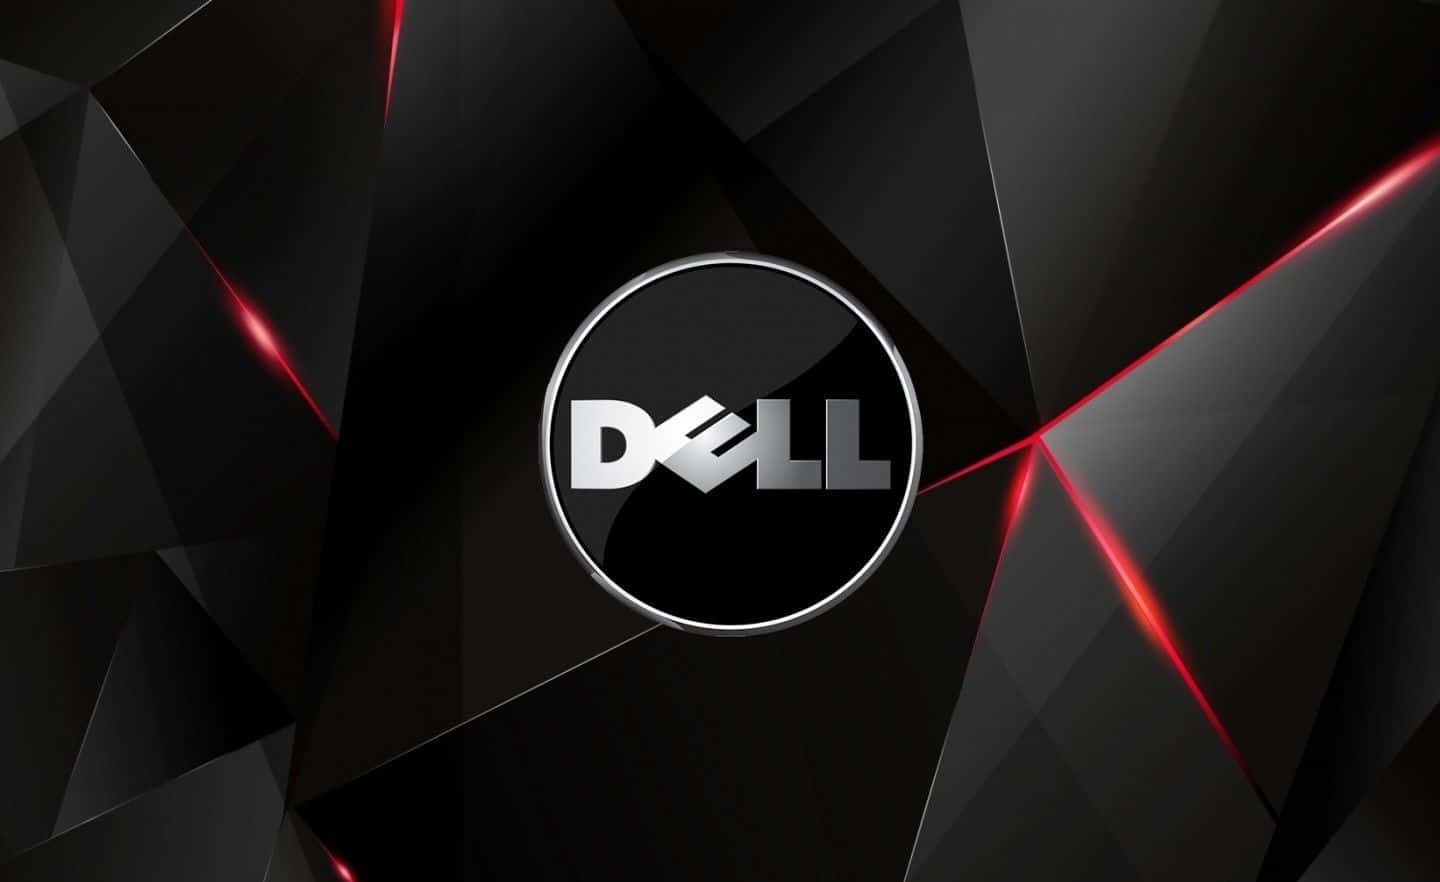 Experimentauna Velocidad Y Potencia Excepcionales Con Dell.